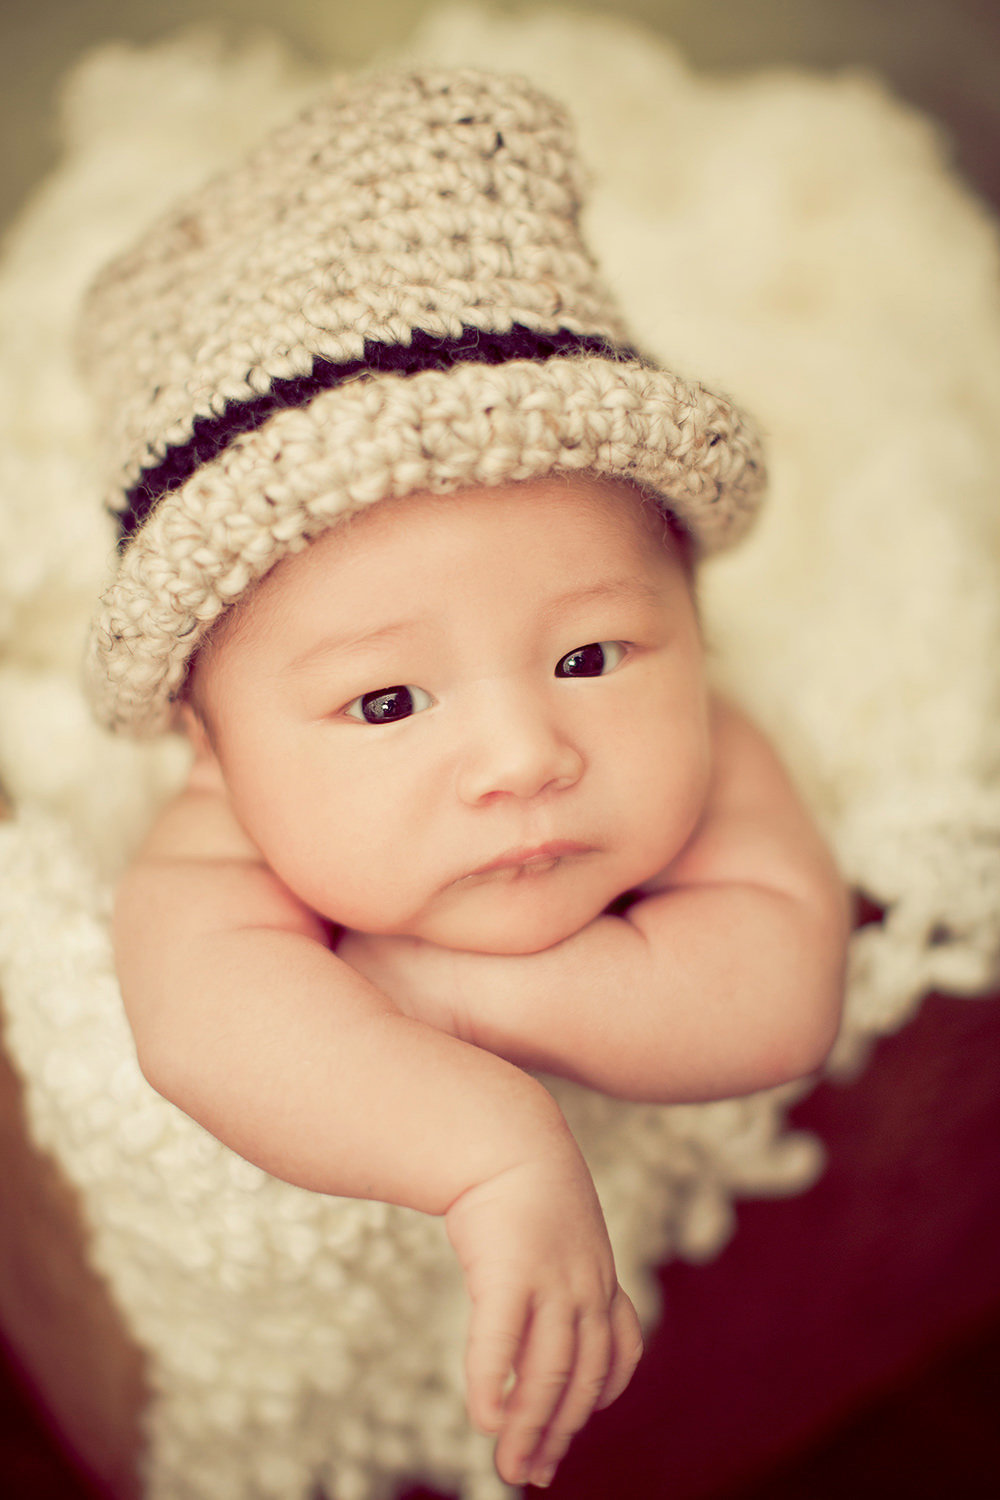 san diego newborn photographer | newborn in cute basket with top hat